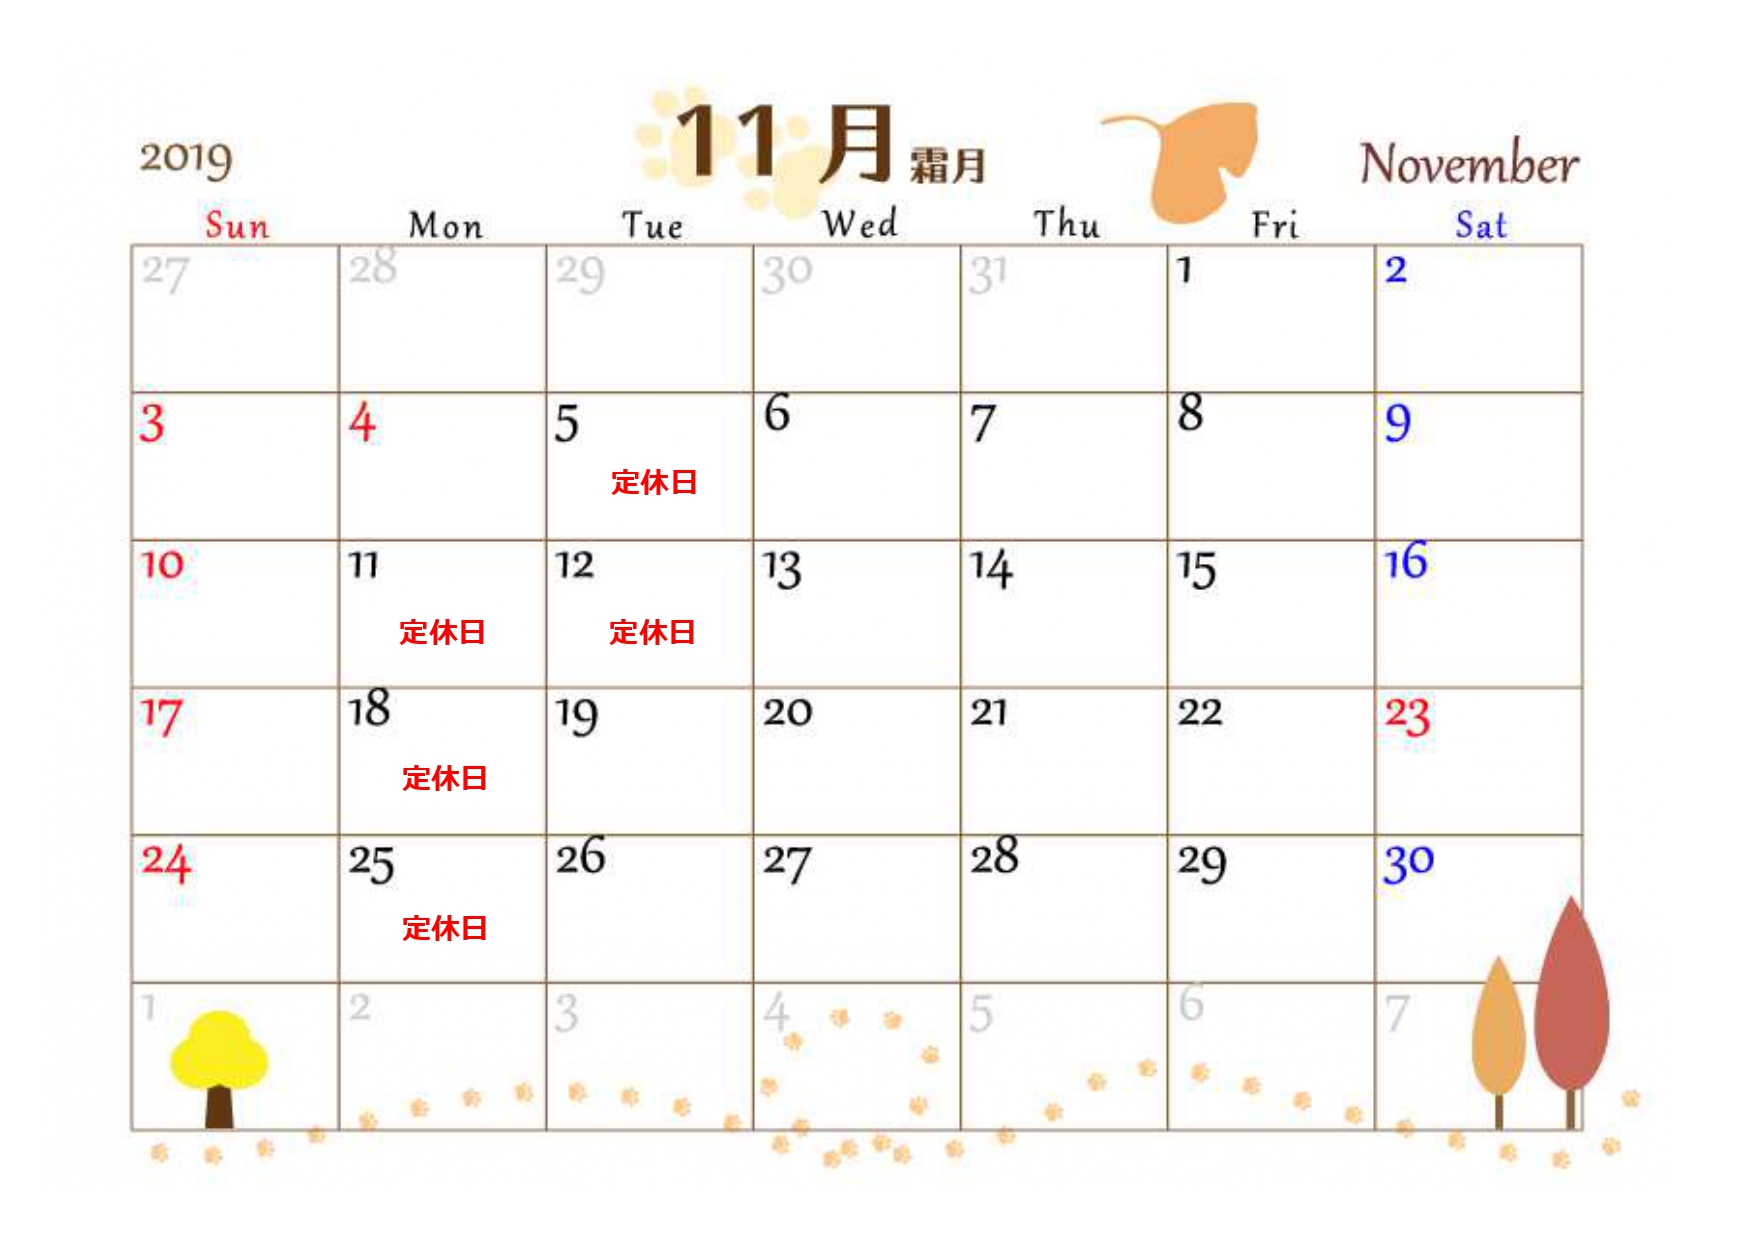 ◇ November ◇